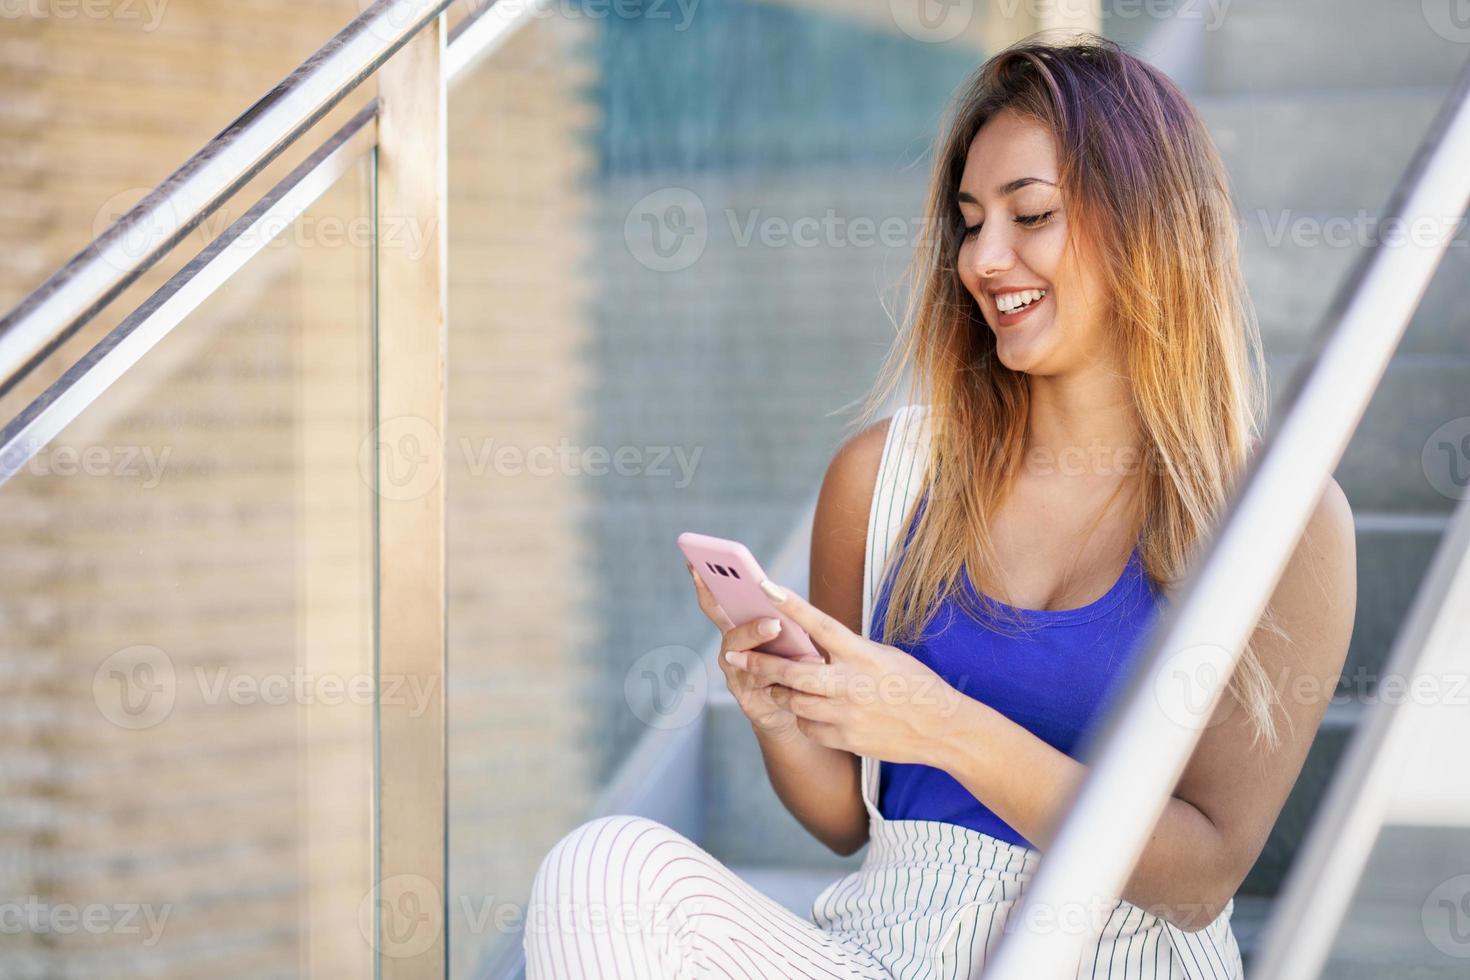 garota usando um smartphone touchscreen com roupas casuais foto